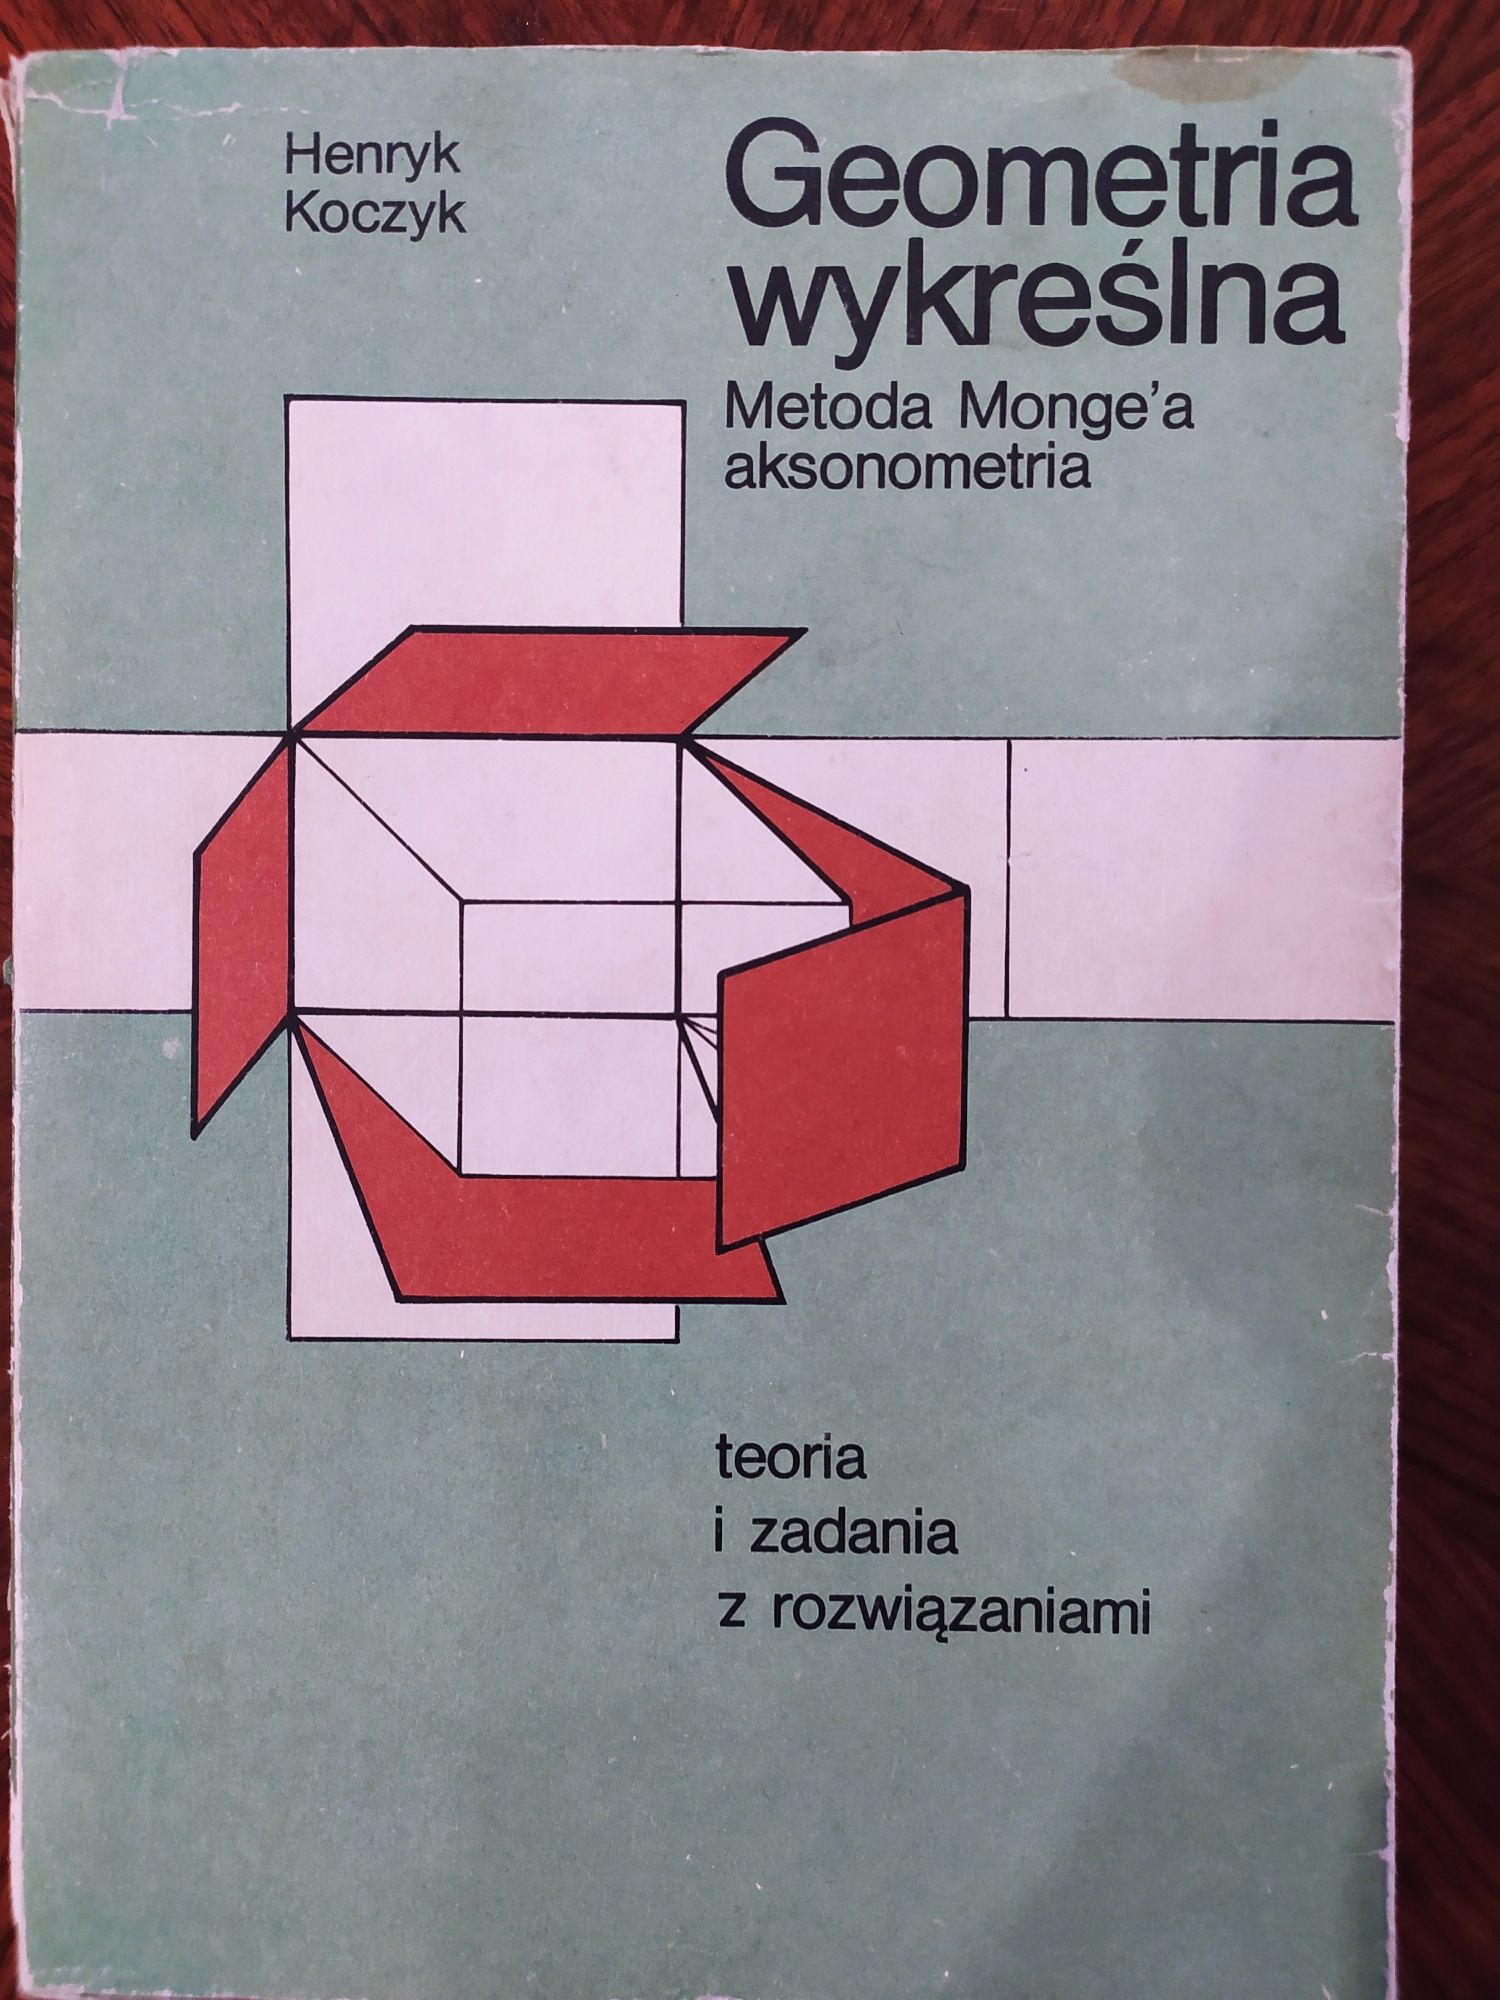 Geometria wykreślna - Henryk Koczyk